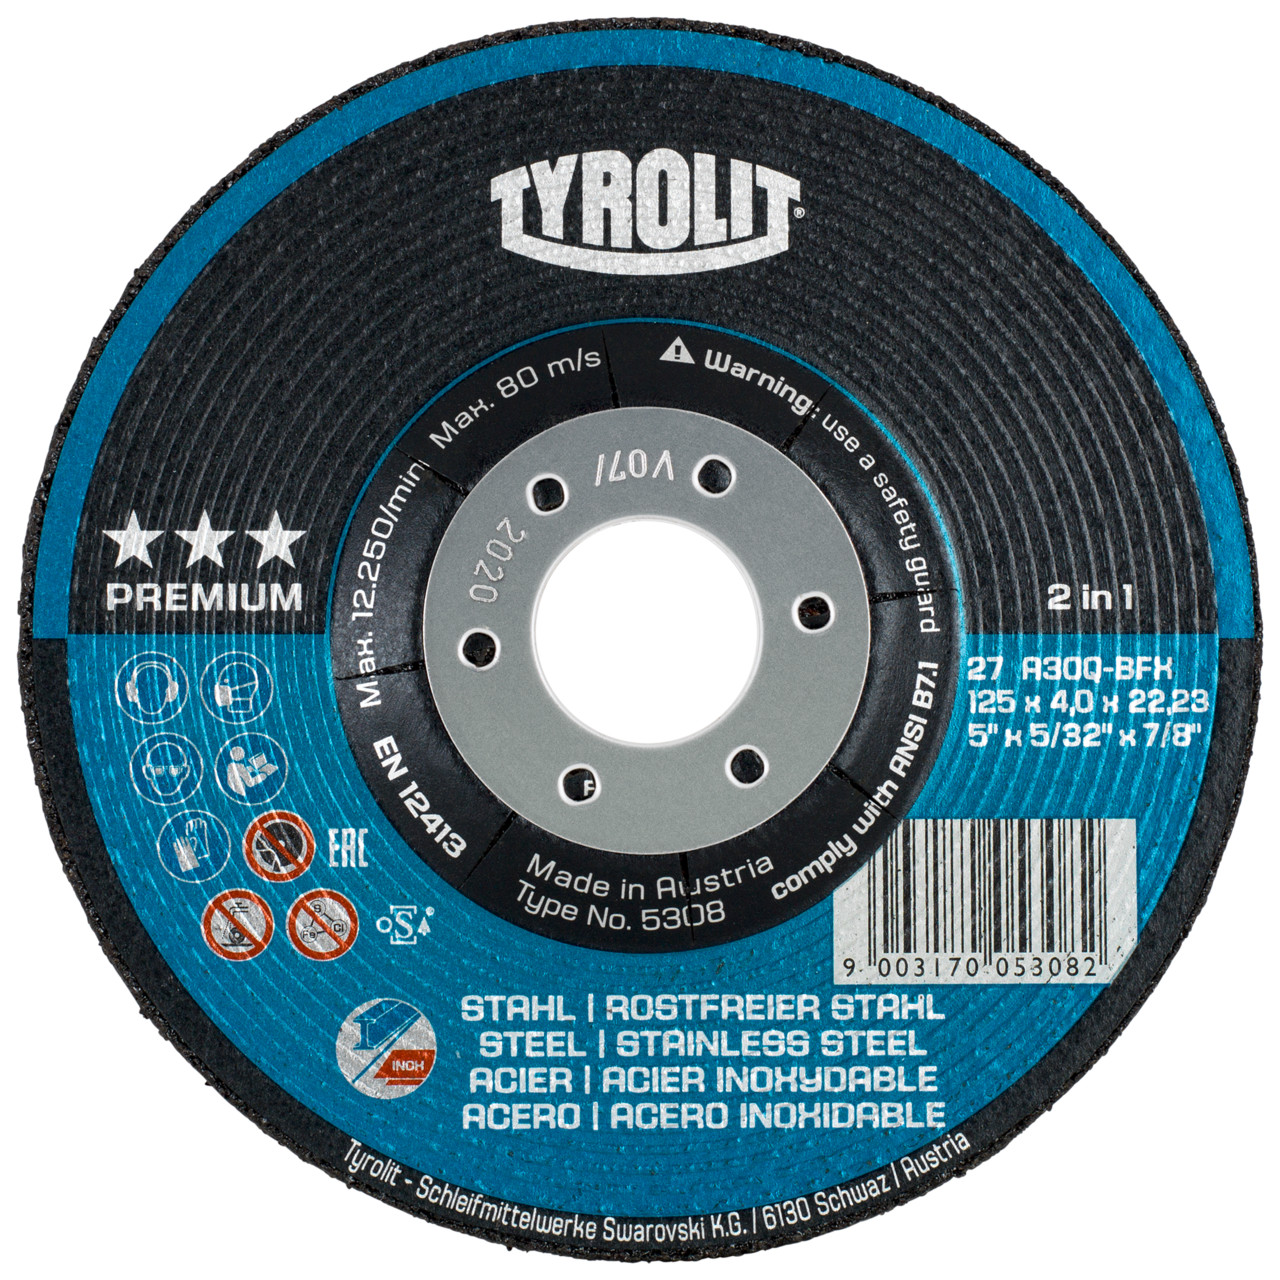 TYROLIT disco de desbaste DxUxH 230x7x22,23 2en1 para acero y acero inoxidable, forma: 27 - versión offset, Art. 34046134